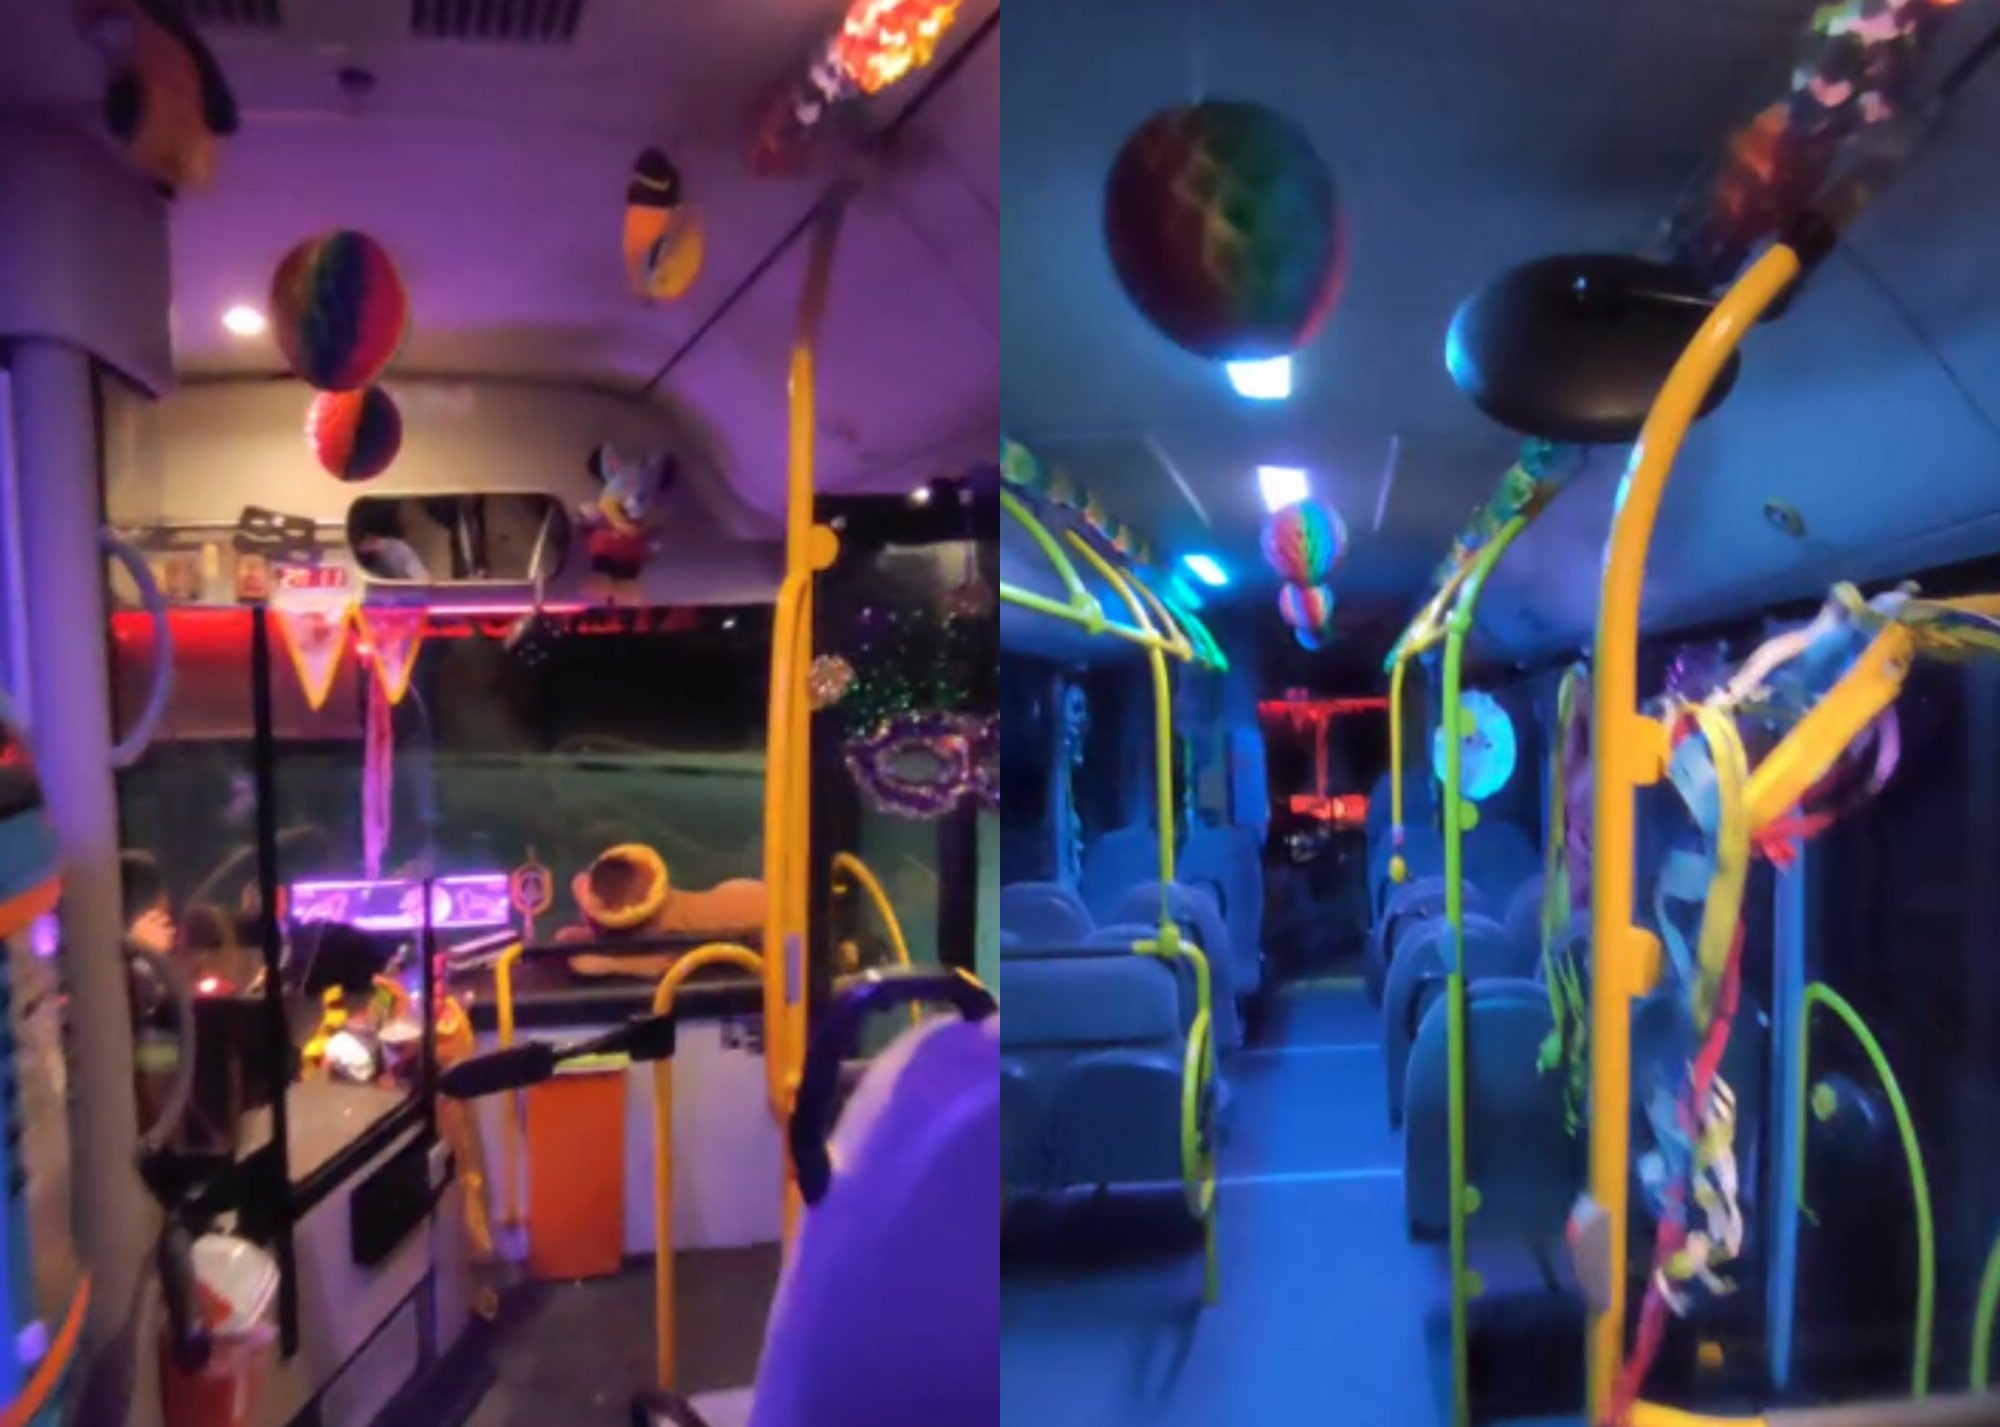 Μάσκες, σερπαντίνες και πολύχρωμα φώτα – Viral το στολισμένο λεωφορείο με αποκριάτικα